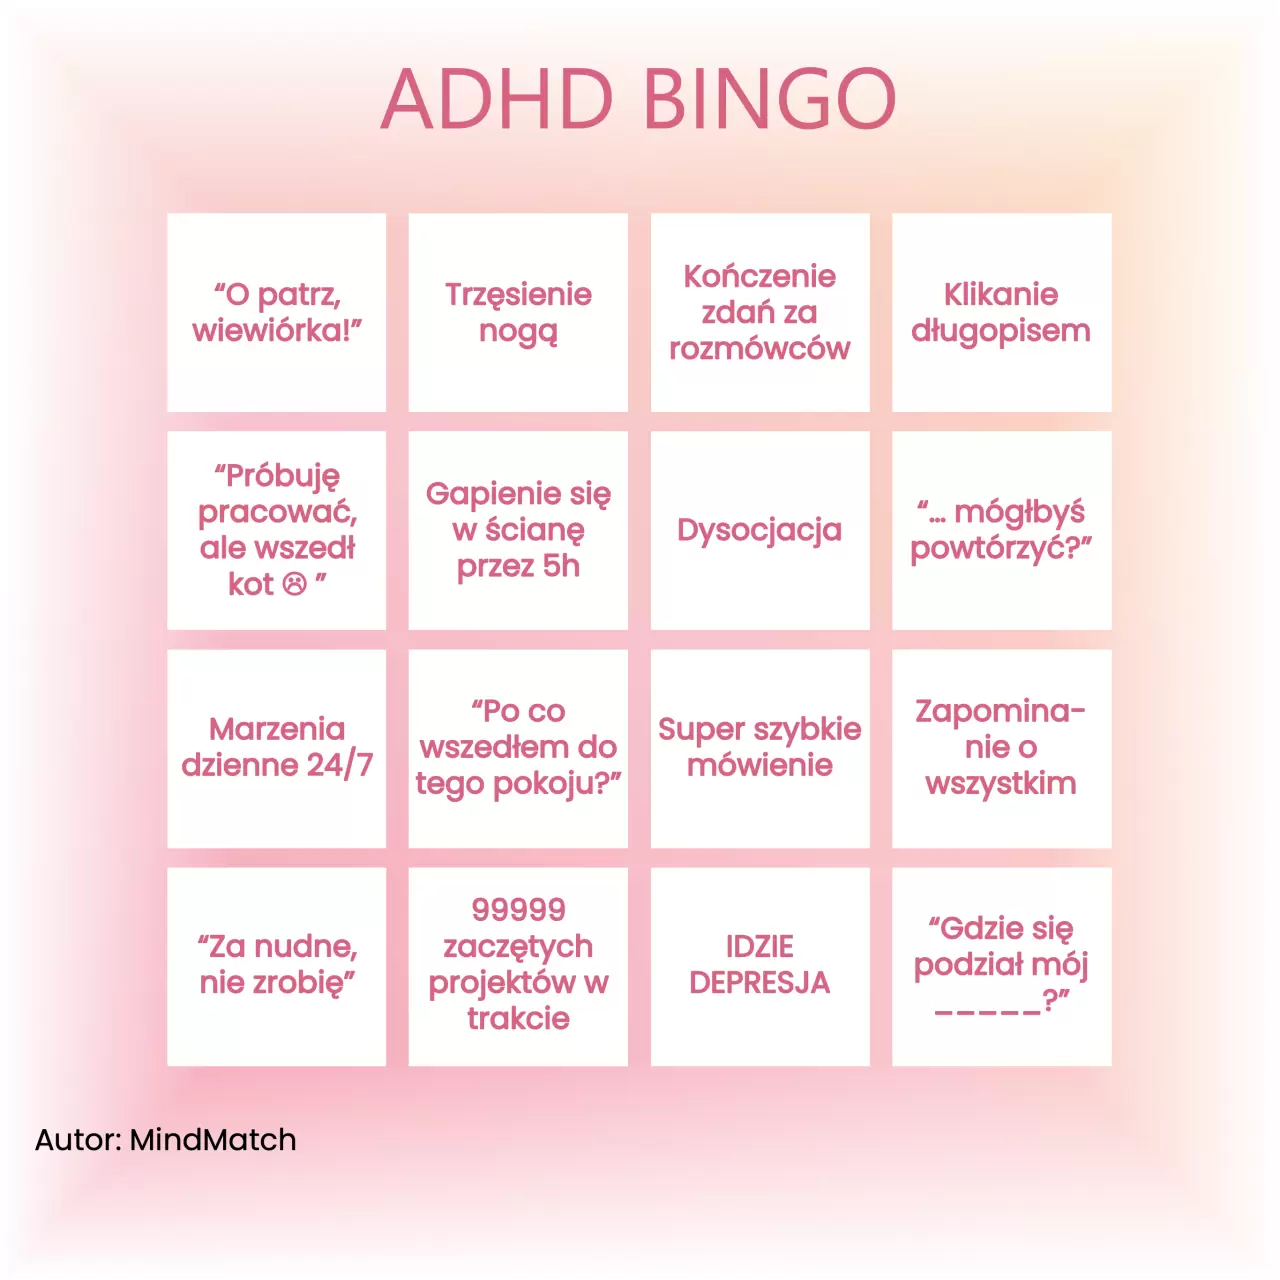 ADHD Bingo: Jak dużo z tych objawów widzisz w swoim życiu?